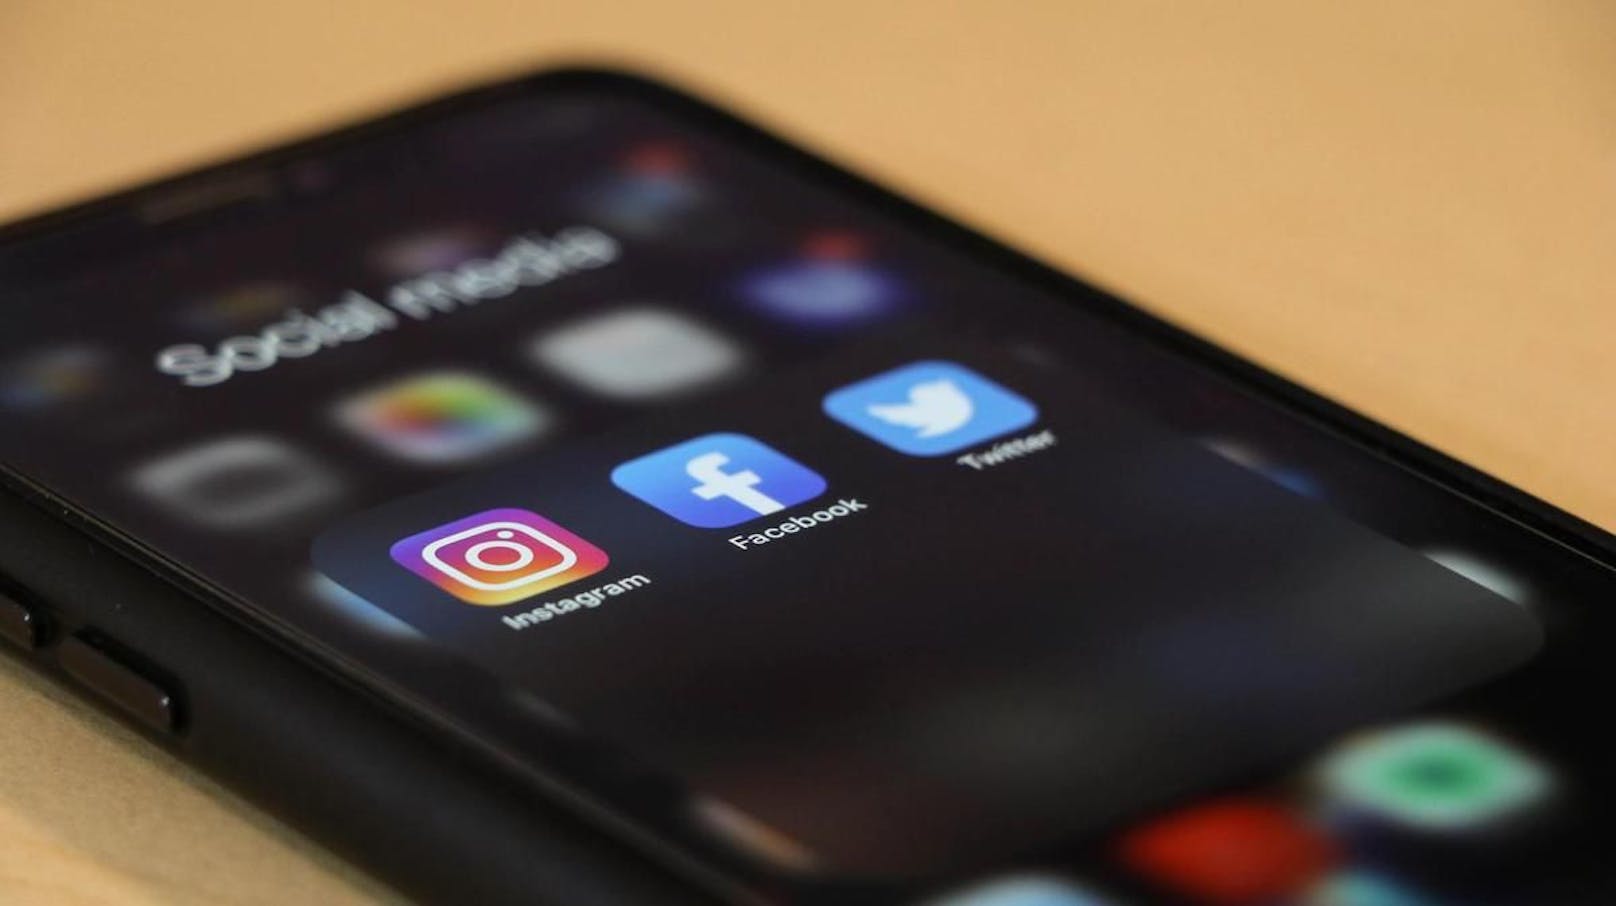 Darin zeigte sich, dass rund 13 Prozent der Nutzerinnen und Nutzern in Großbritannien und sechs Prozent in den USA ihre suizidalen Gedanken auf die Nutzung von Instagram zurückführen.